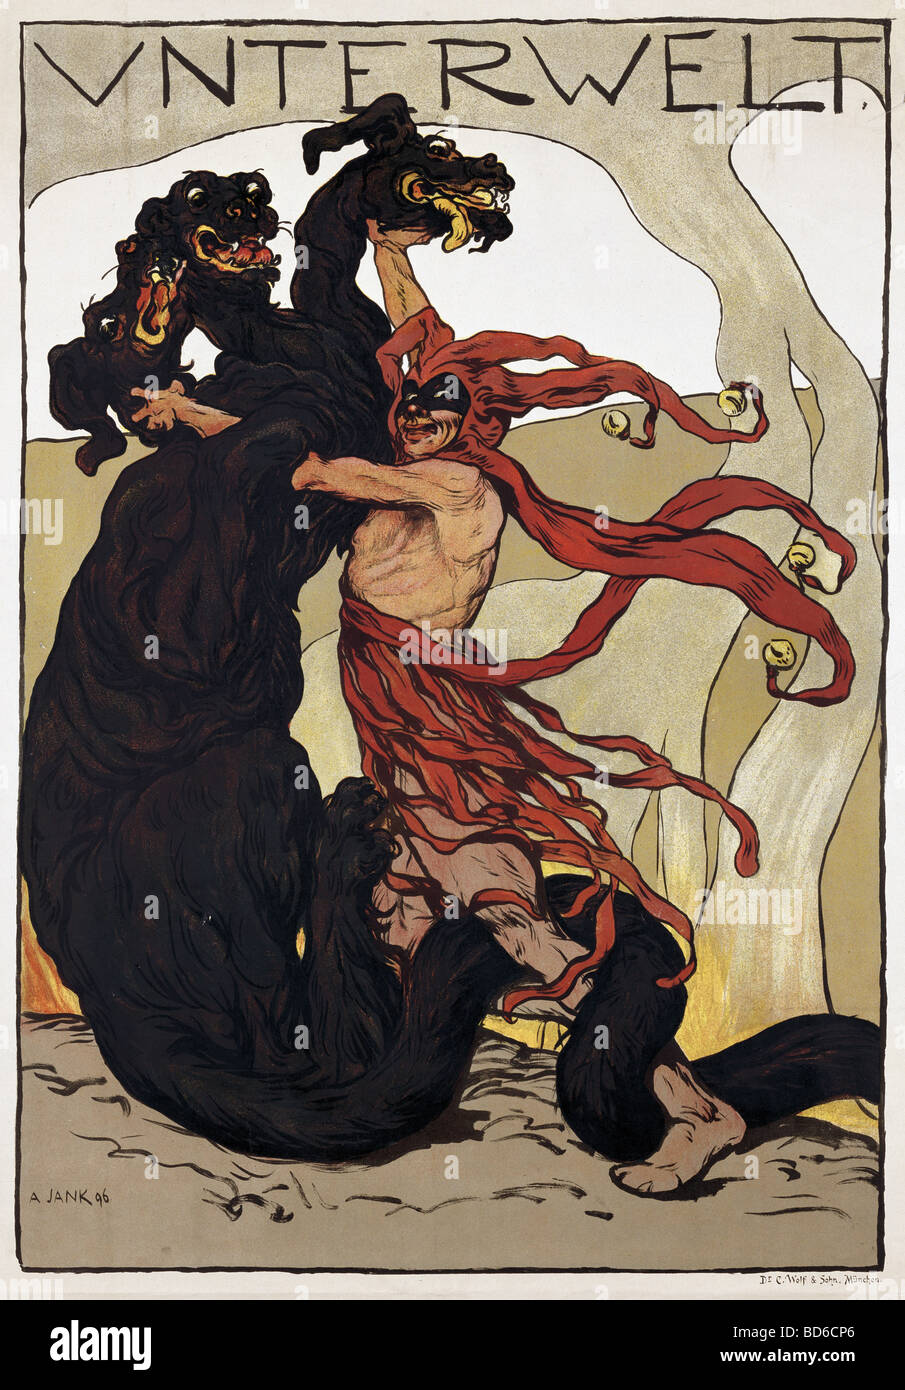 Belle arti, Jank, Angelo (30.10.1884 - 9.10.1940), il poster "Unterwelt' (ADE), 1896, stampata da C. Wolf e figlio, monaco di baviera, Germa Foto Stock